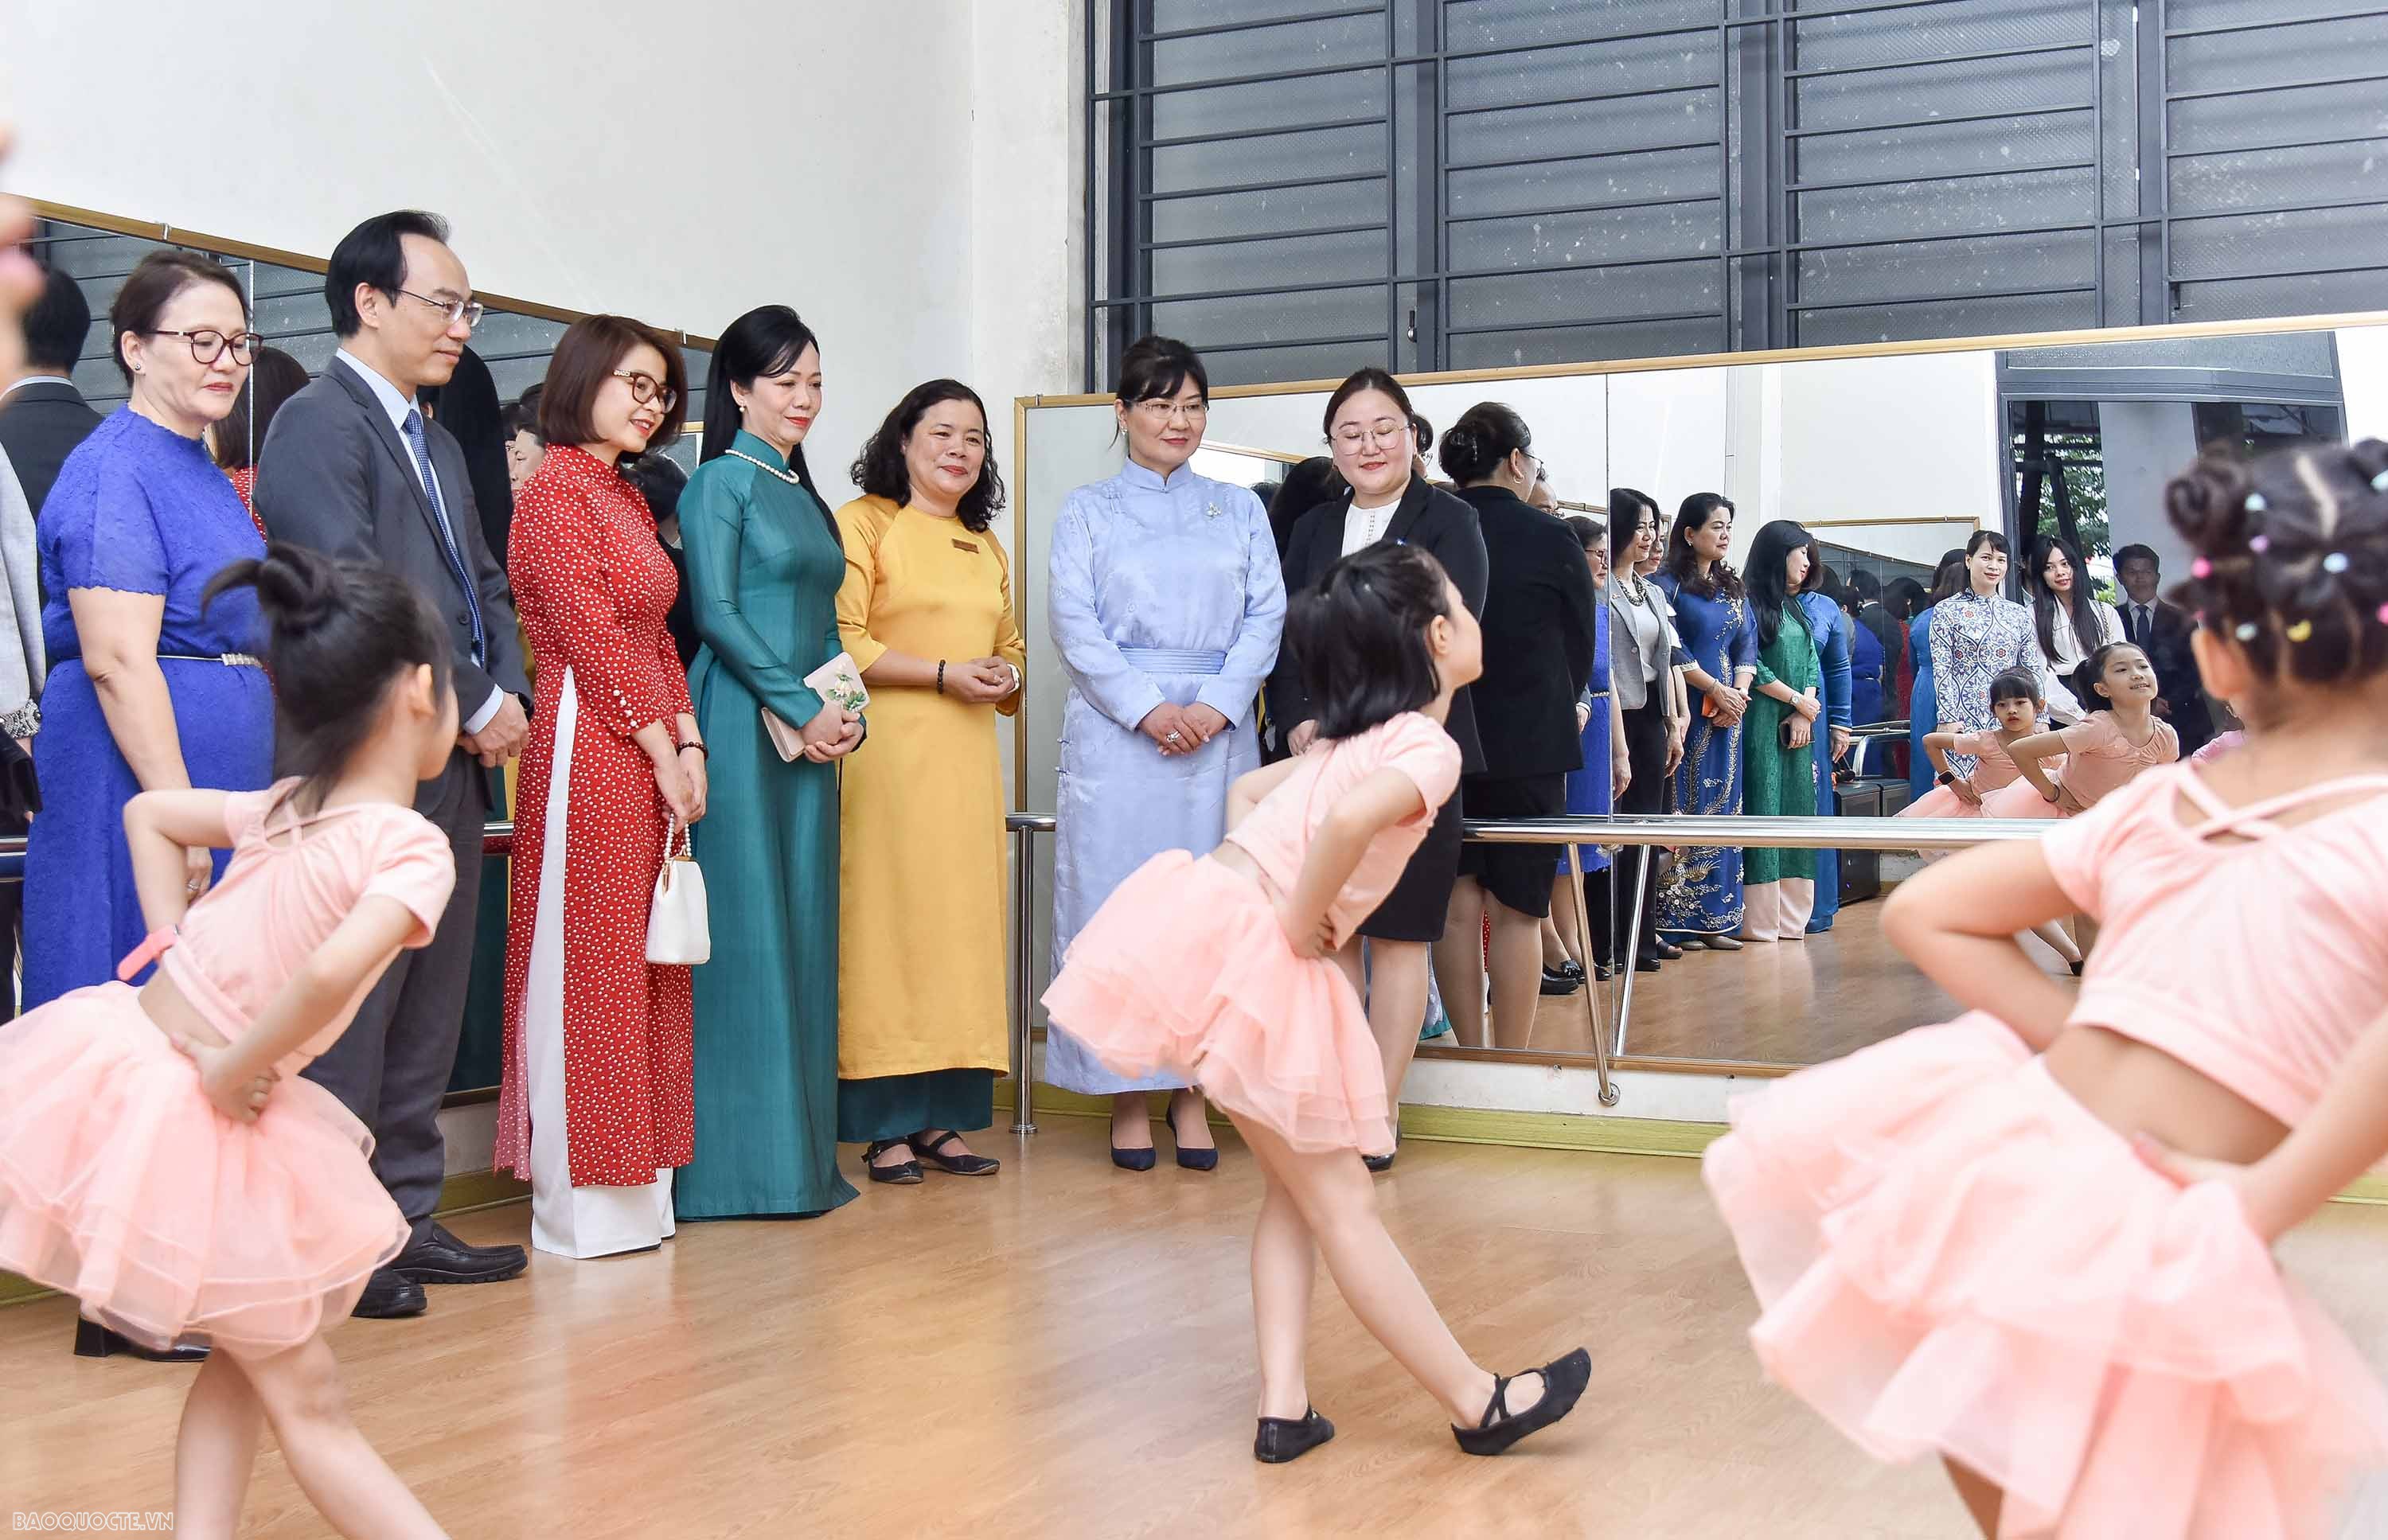 Phu nhân Chủ tịch nước và Phu nhân Tổng thống Mông Cổ bày tỏ vui mừng khi đến thăm trường tiểu học Chu Văn An, ngôi trường có bề dày lịch sử và nhiều thành tích. Hai phu nhân chúc mừng những thành tựu trong công tác giảng dạy của thầy và trò trường.